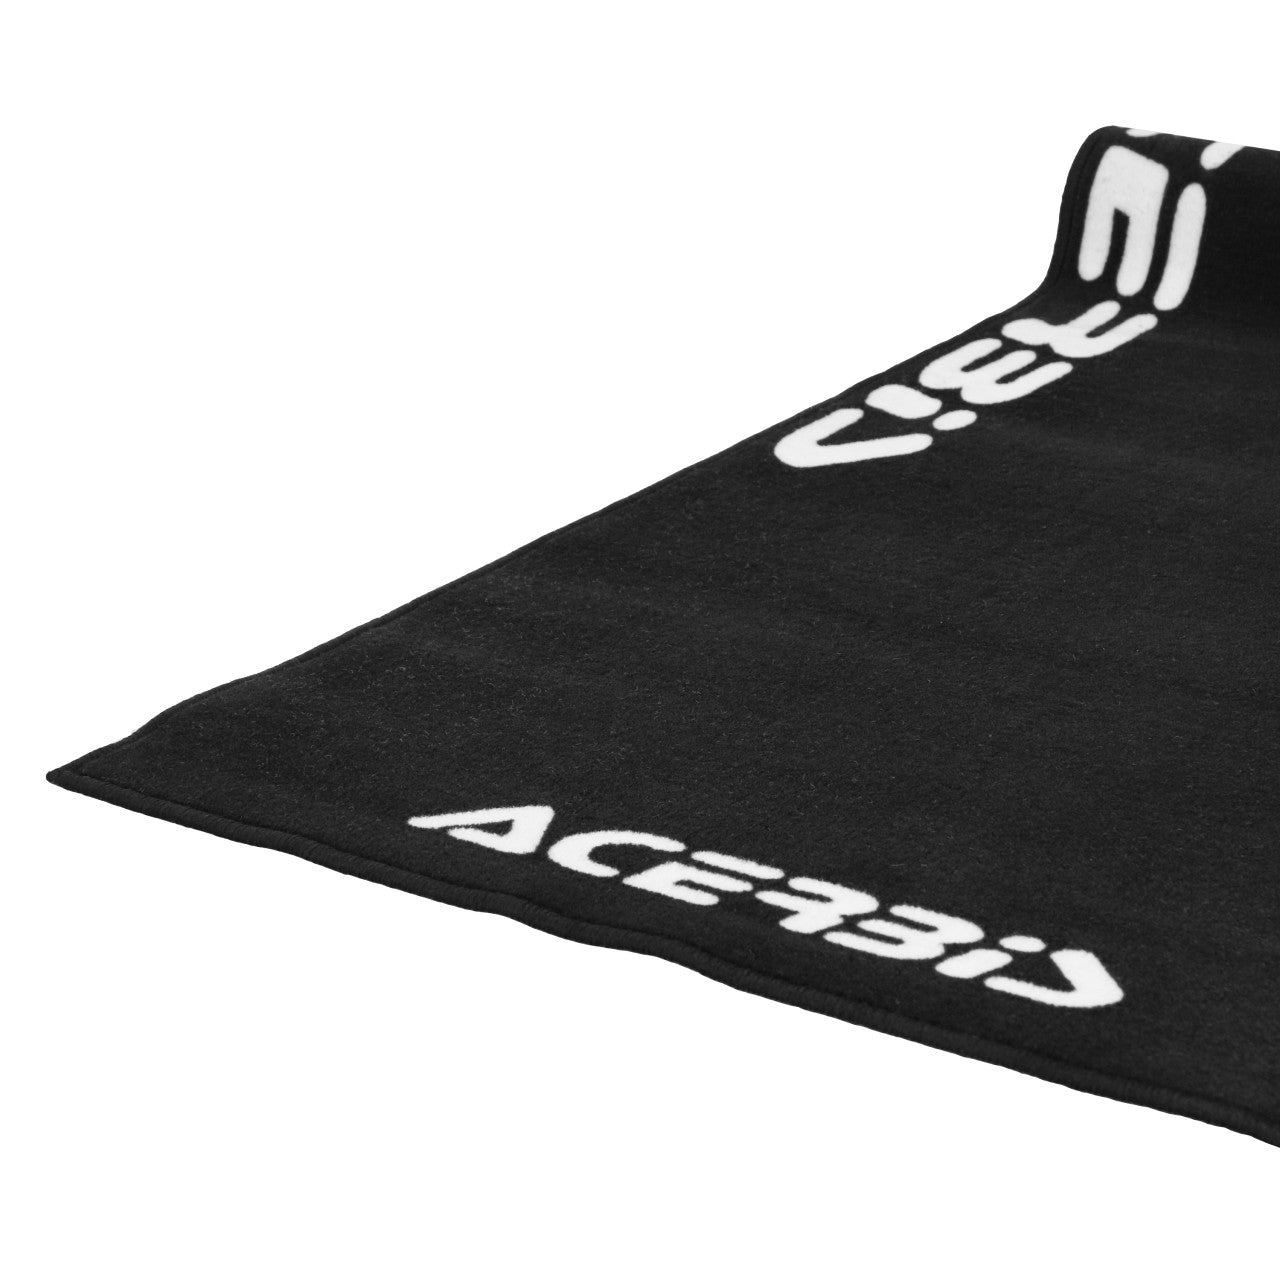 Acerbis Race Carpet 200 x 100cm